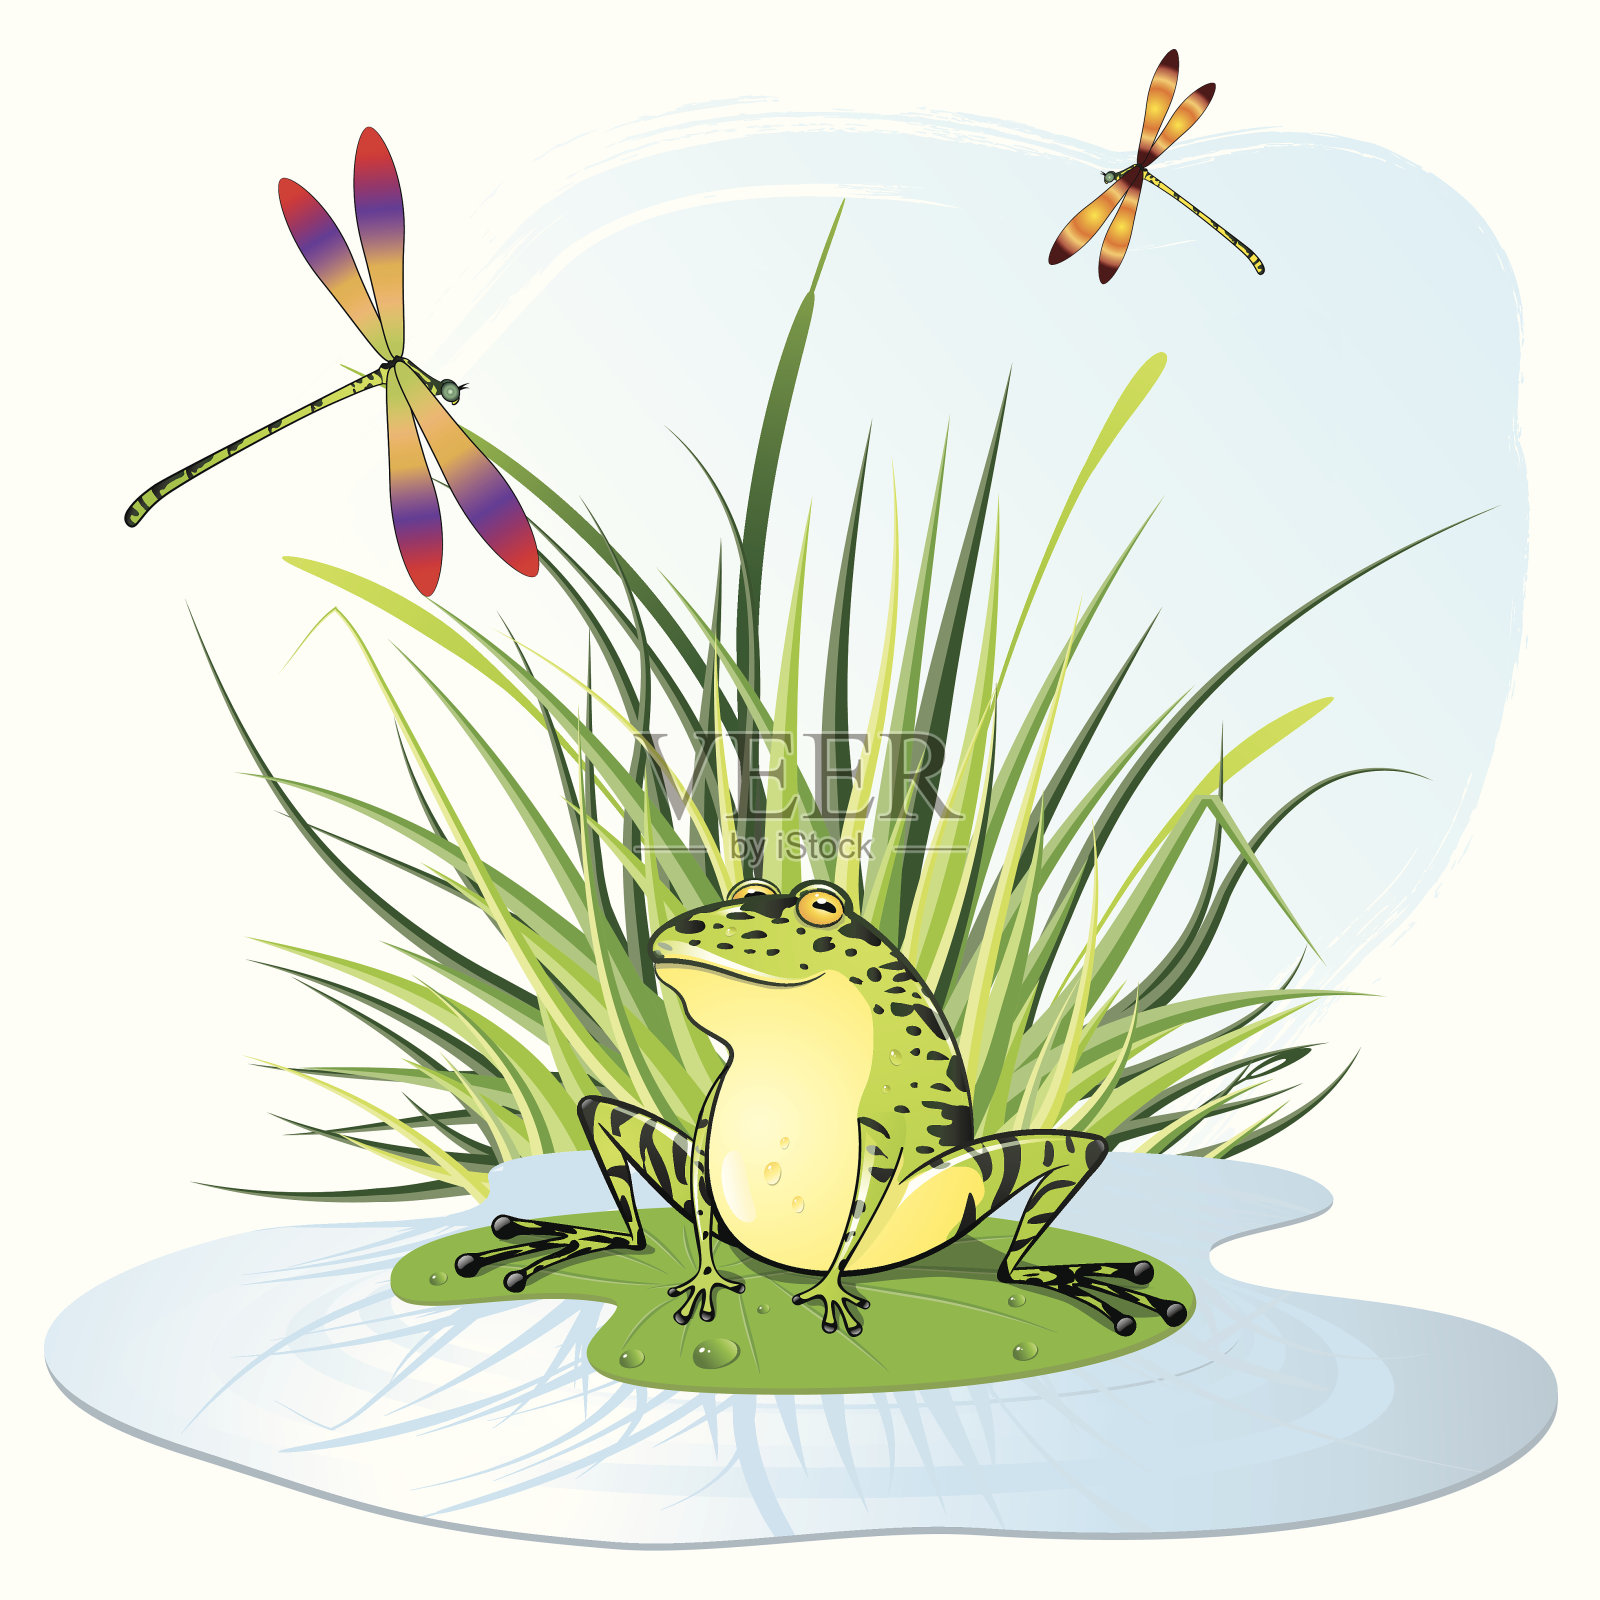 活泼的青蛙坐在草地前的睡莲上插画图片素材